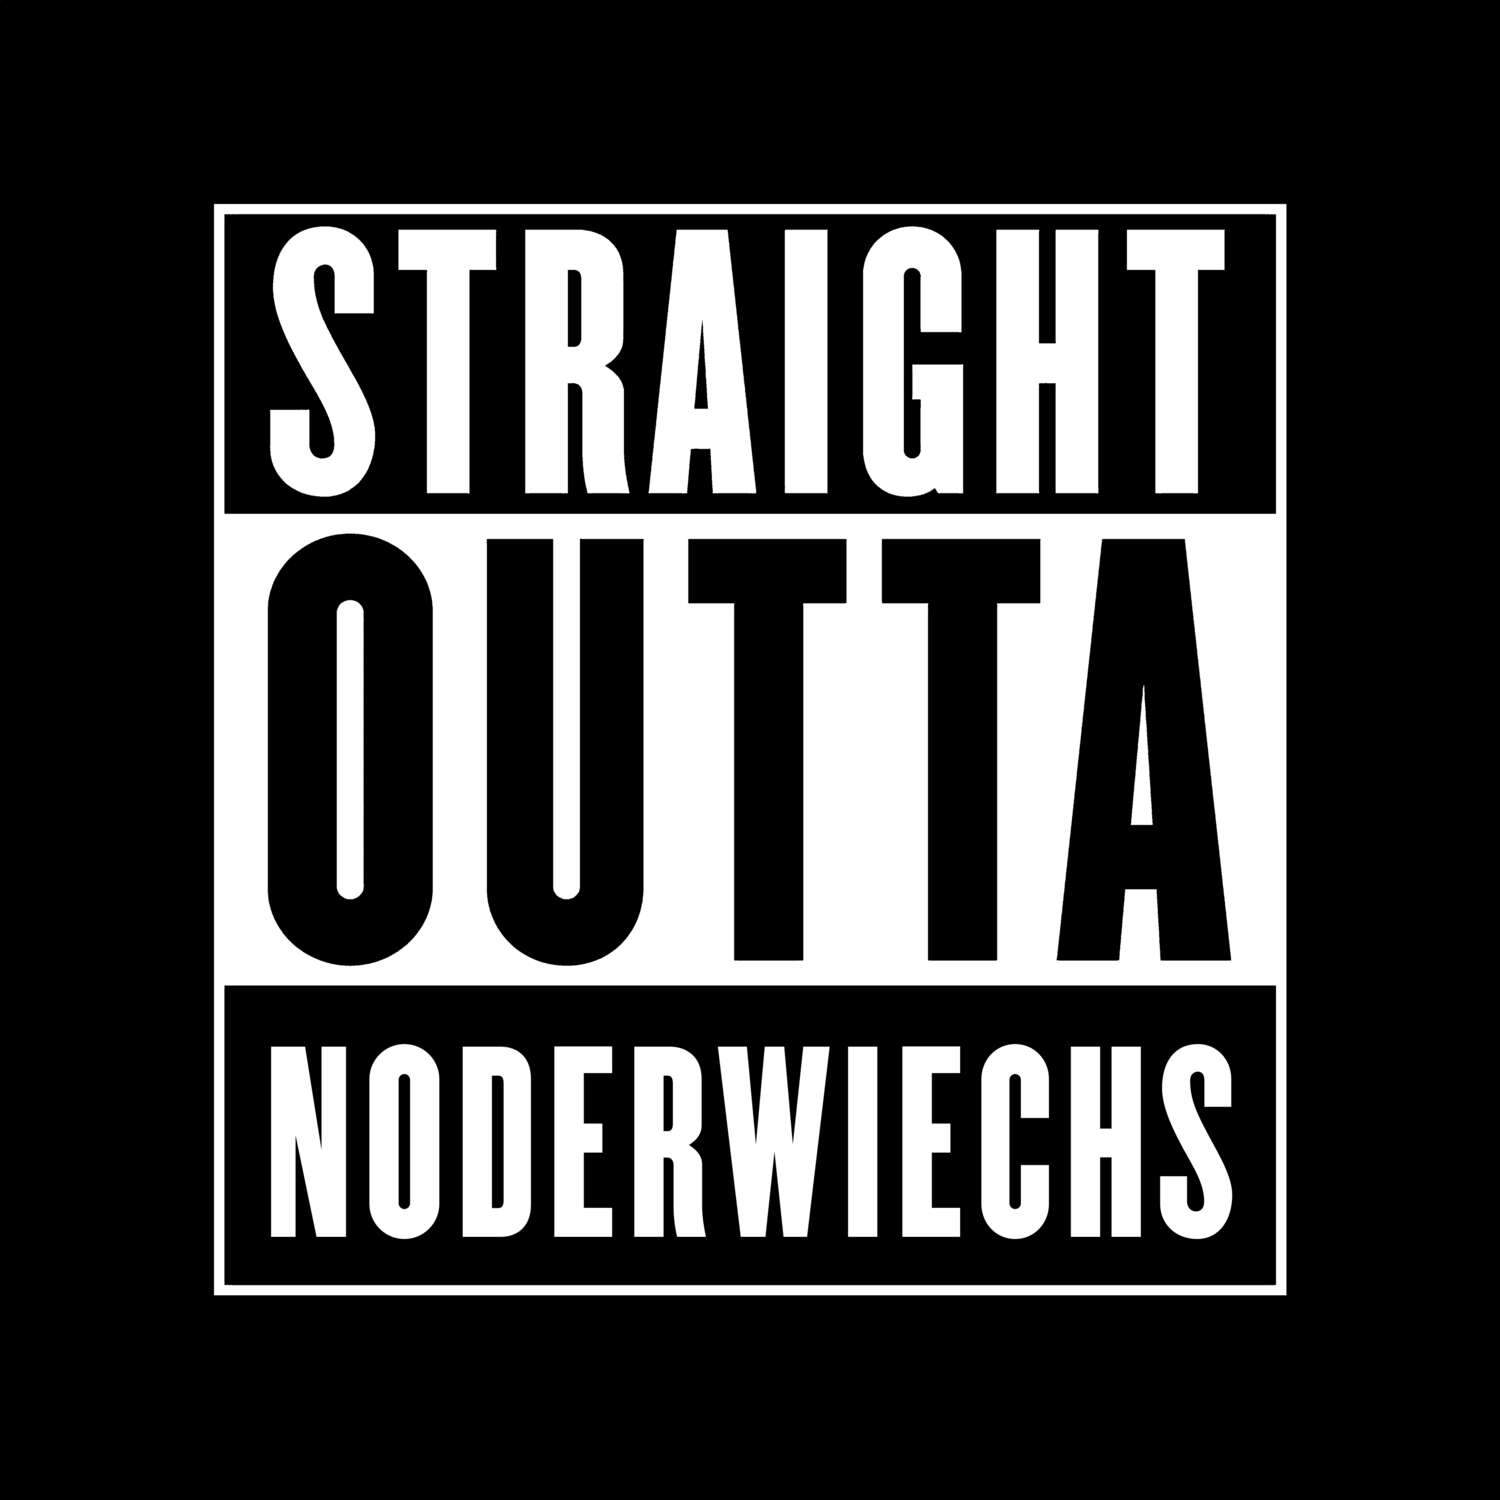 Noderwiechs T-Shirt »Straight Outta«